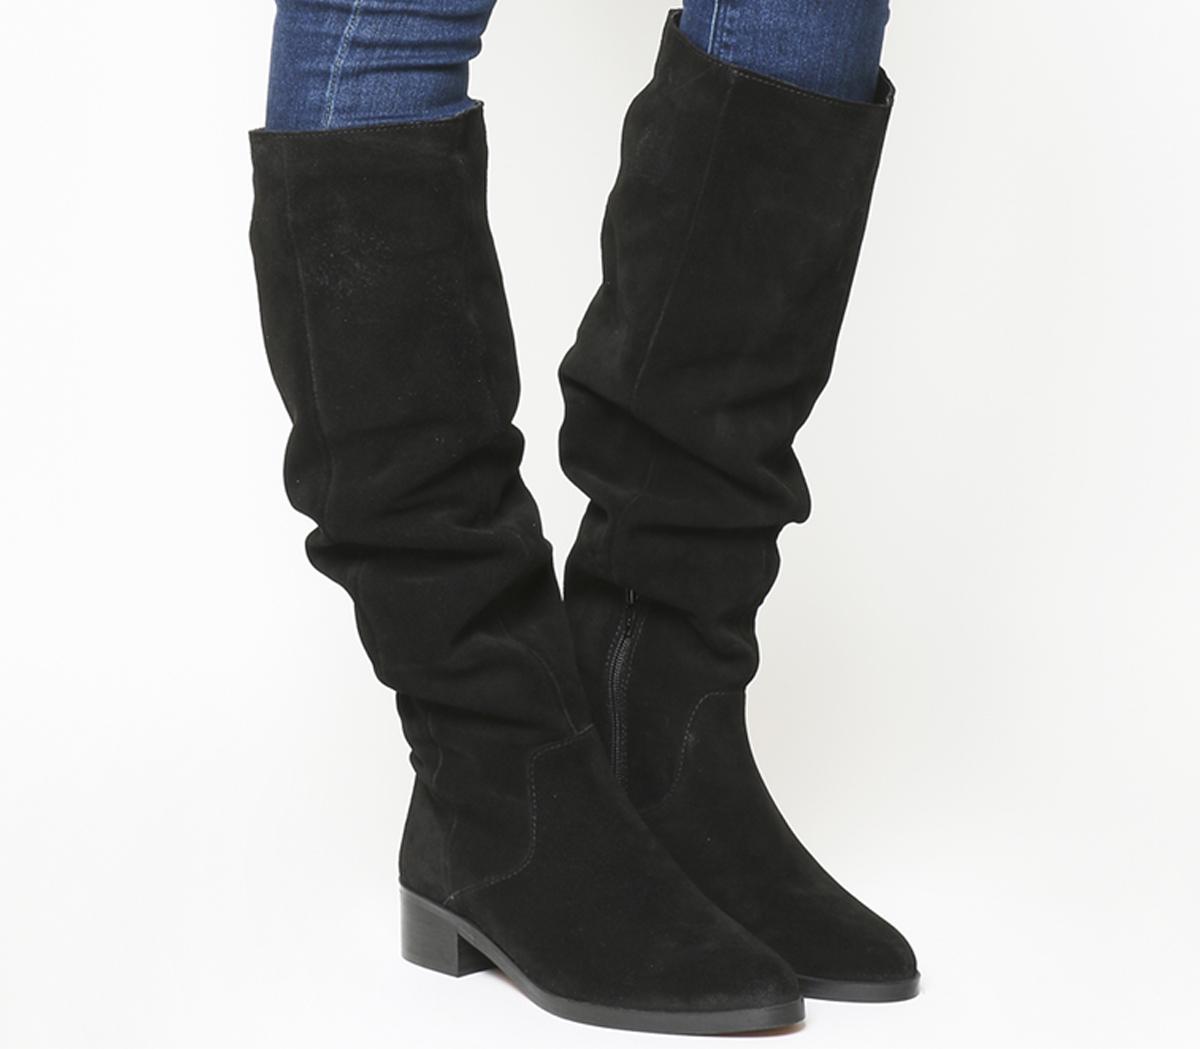 knee high black suede boots with heel